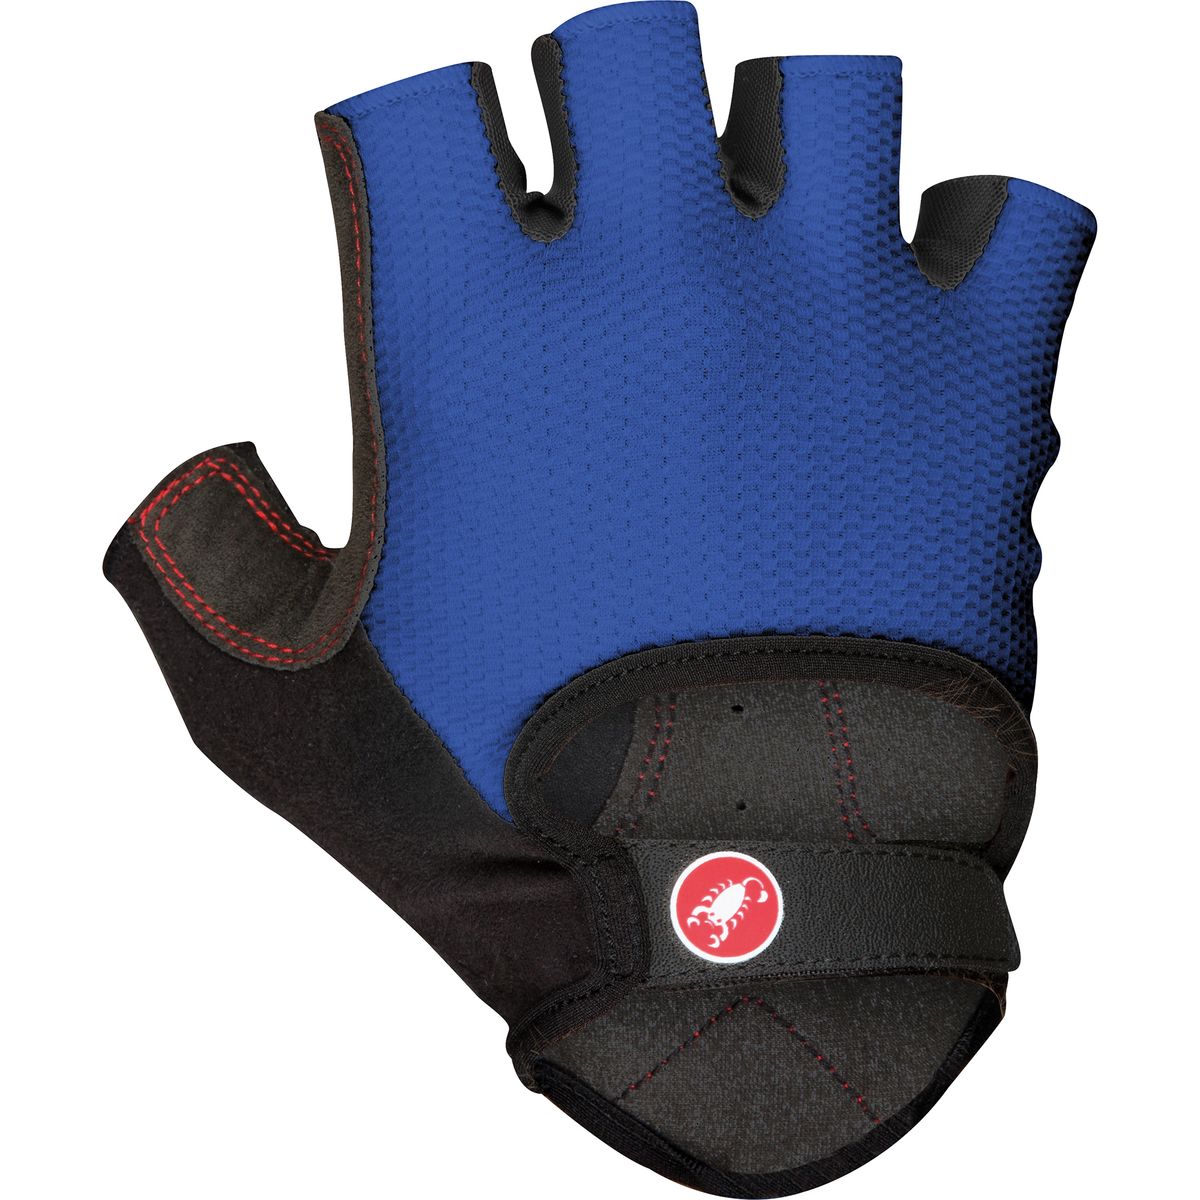 Castelli Pista Gloves Short Finger Men's